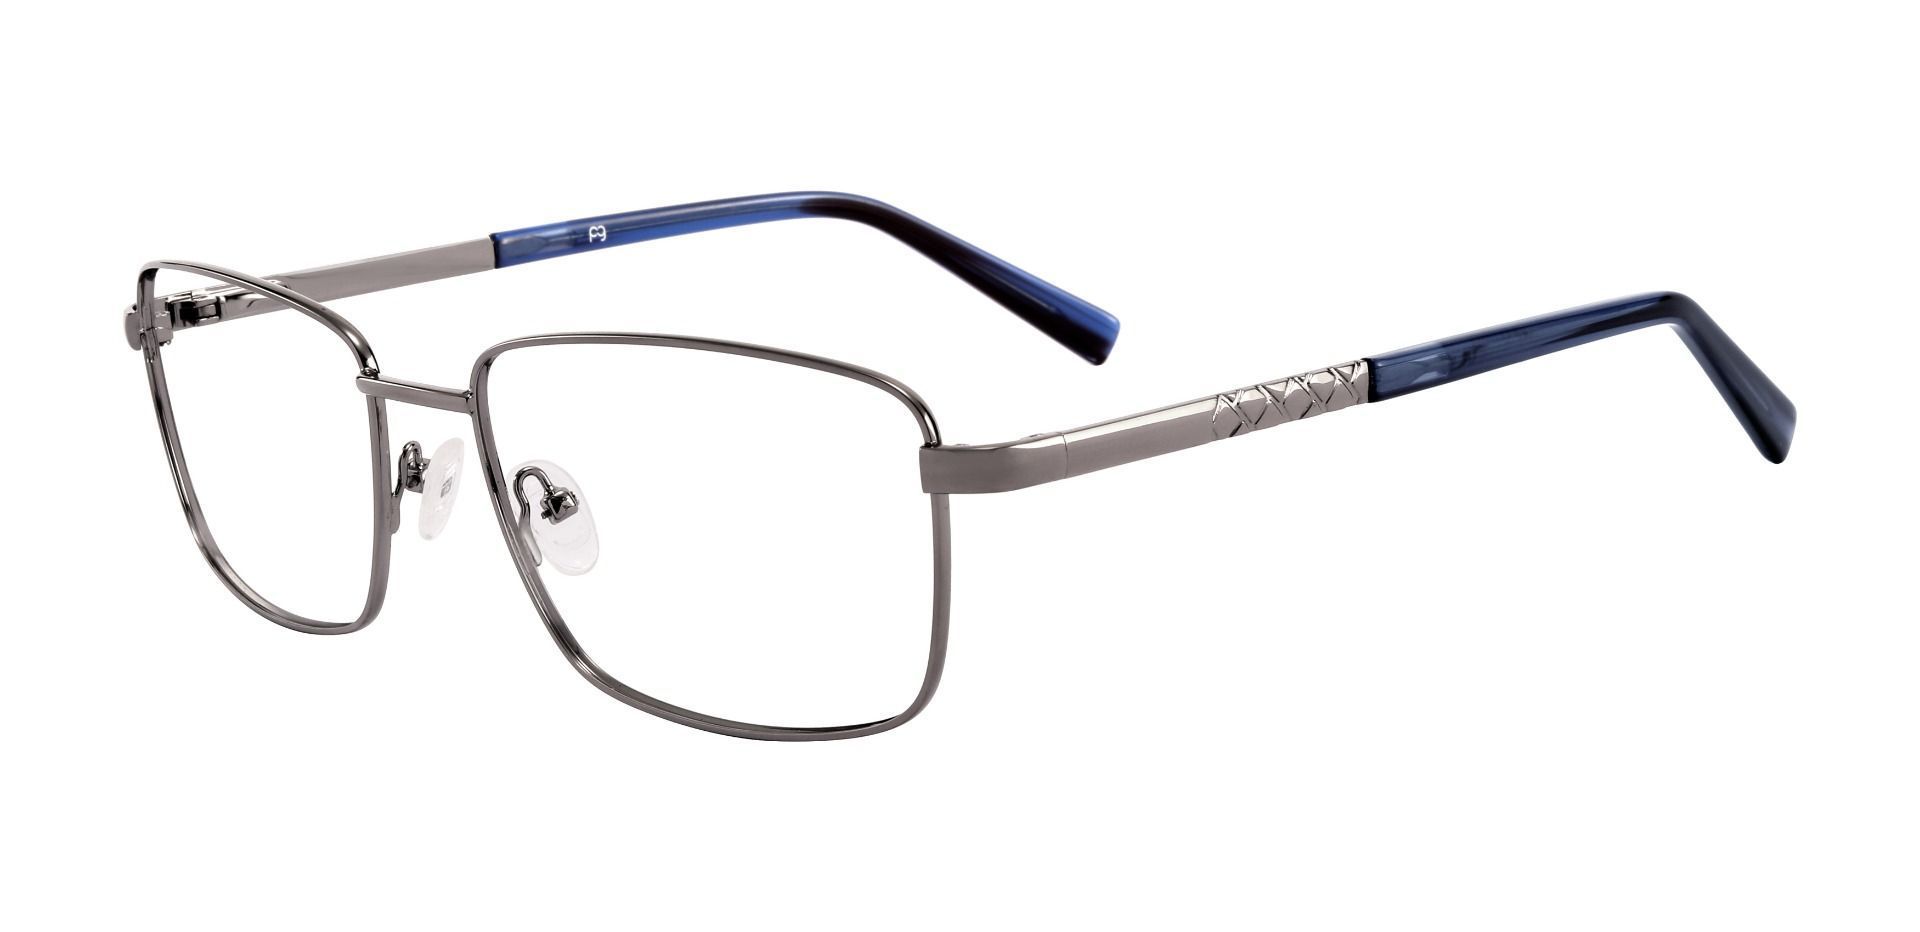 Marshall Rectangle Eyeglasses Frame - Silver